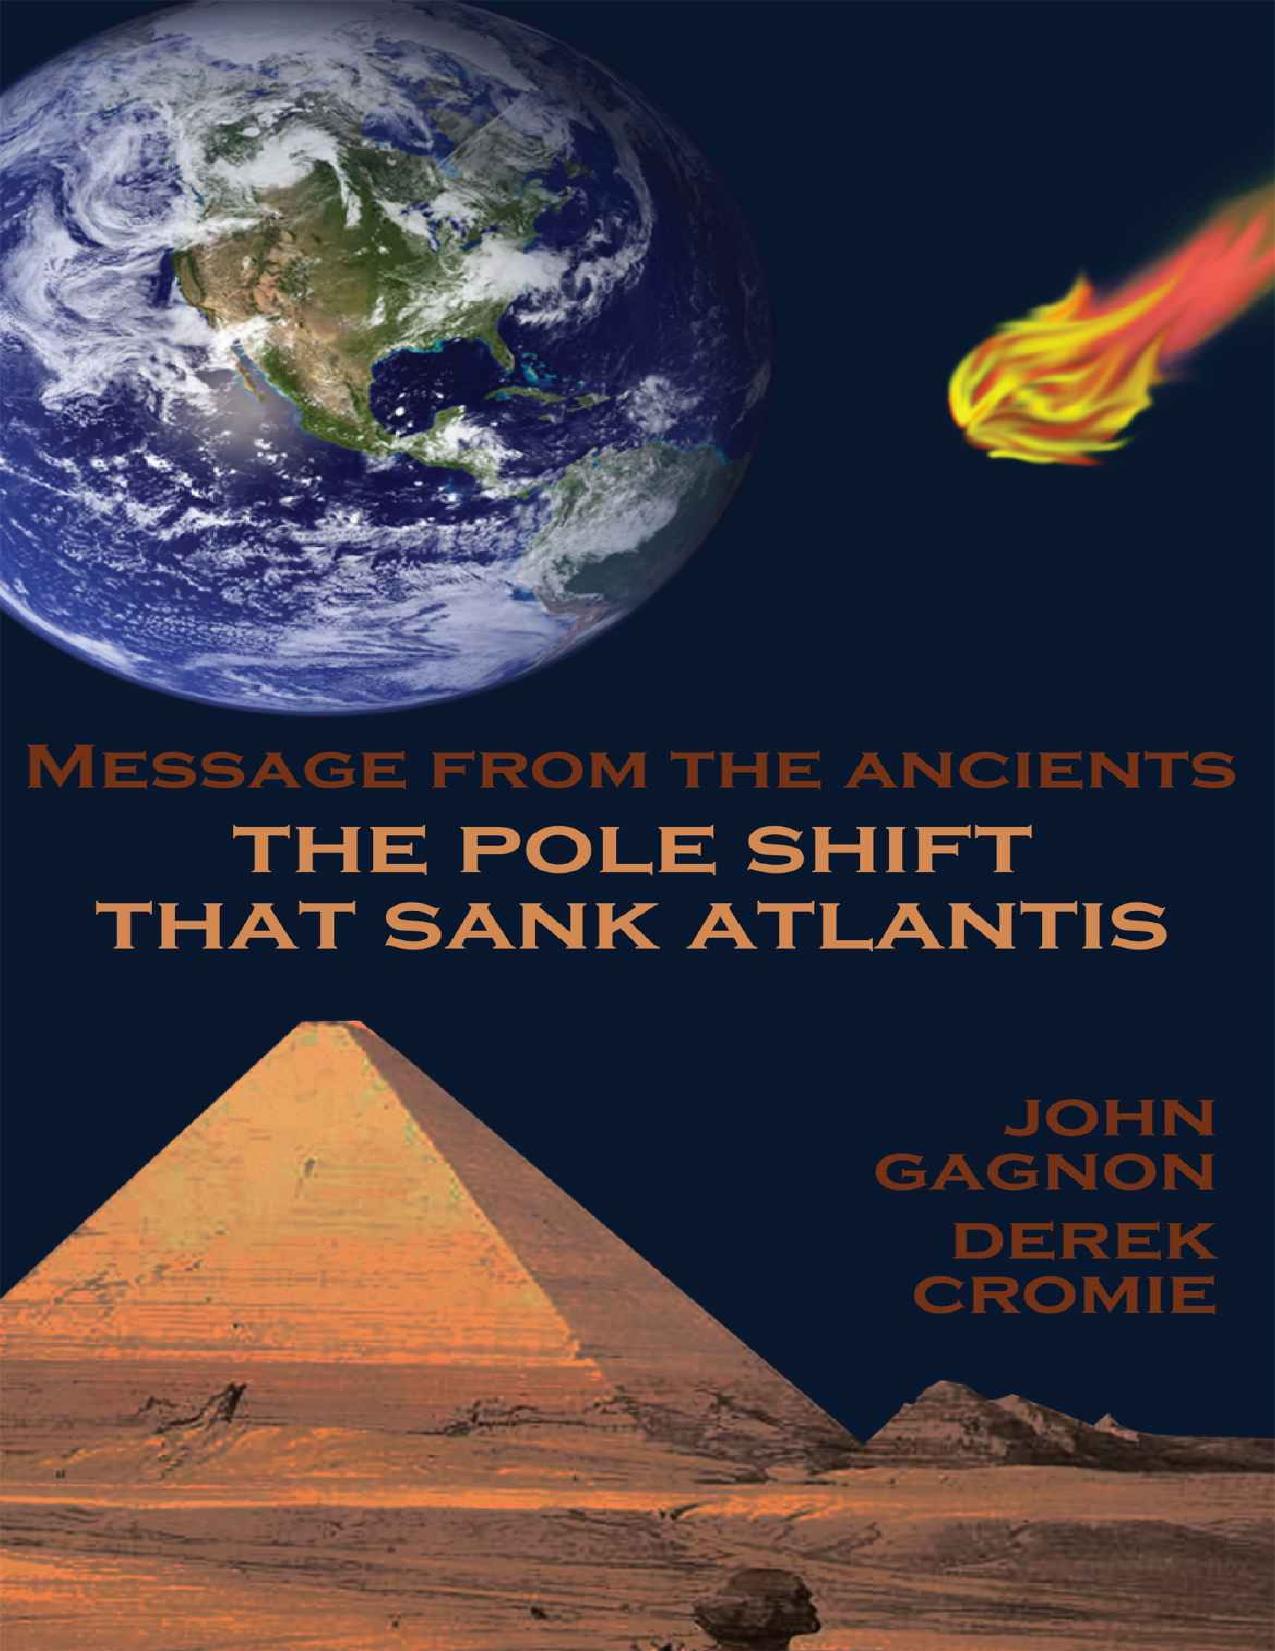 The Pole Shift That Sank Atlantis